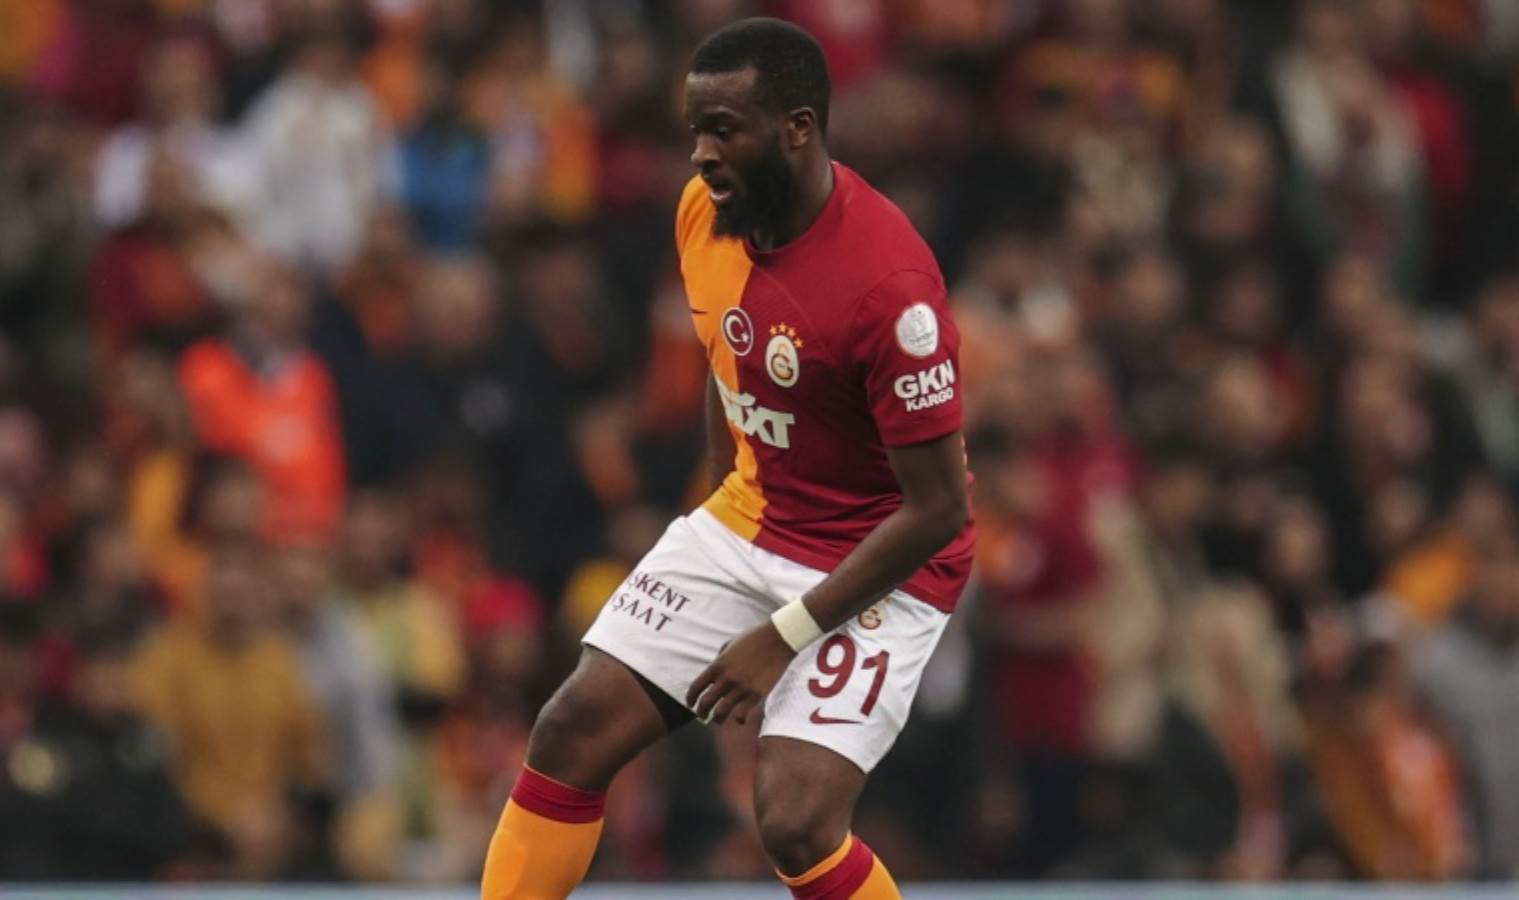 Galatasaray'da forma giymişti: Tanguy Ndombele'nin yeni adresi belli oluyor! - Son Dakika Spor Haberleri | Cumhuriyet